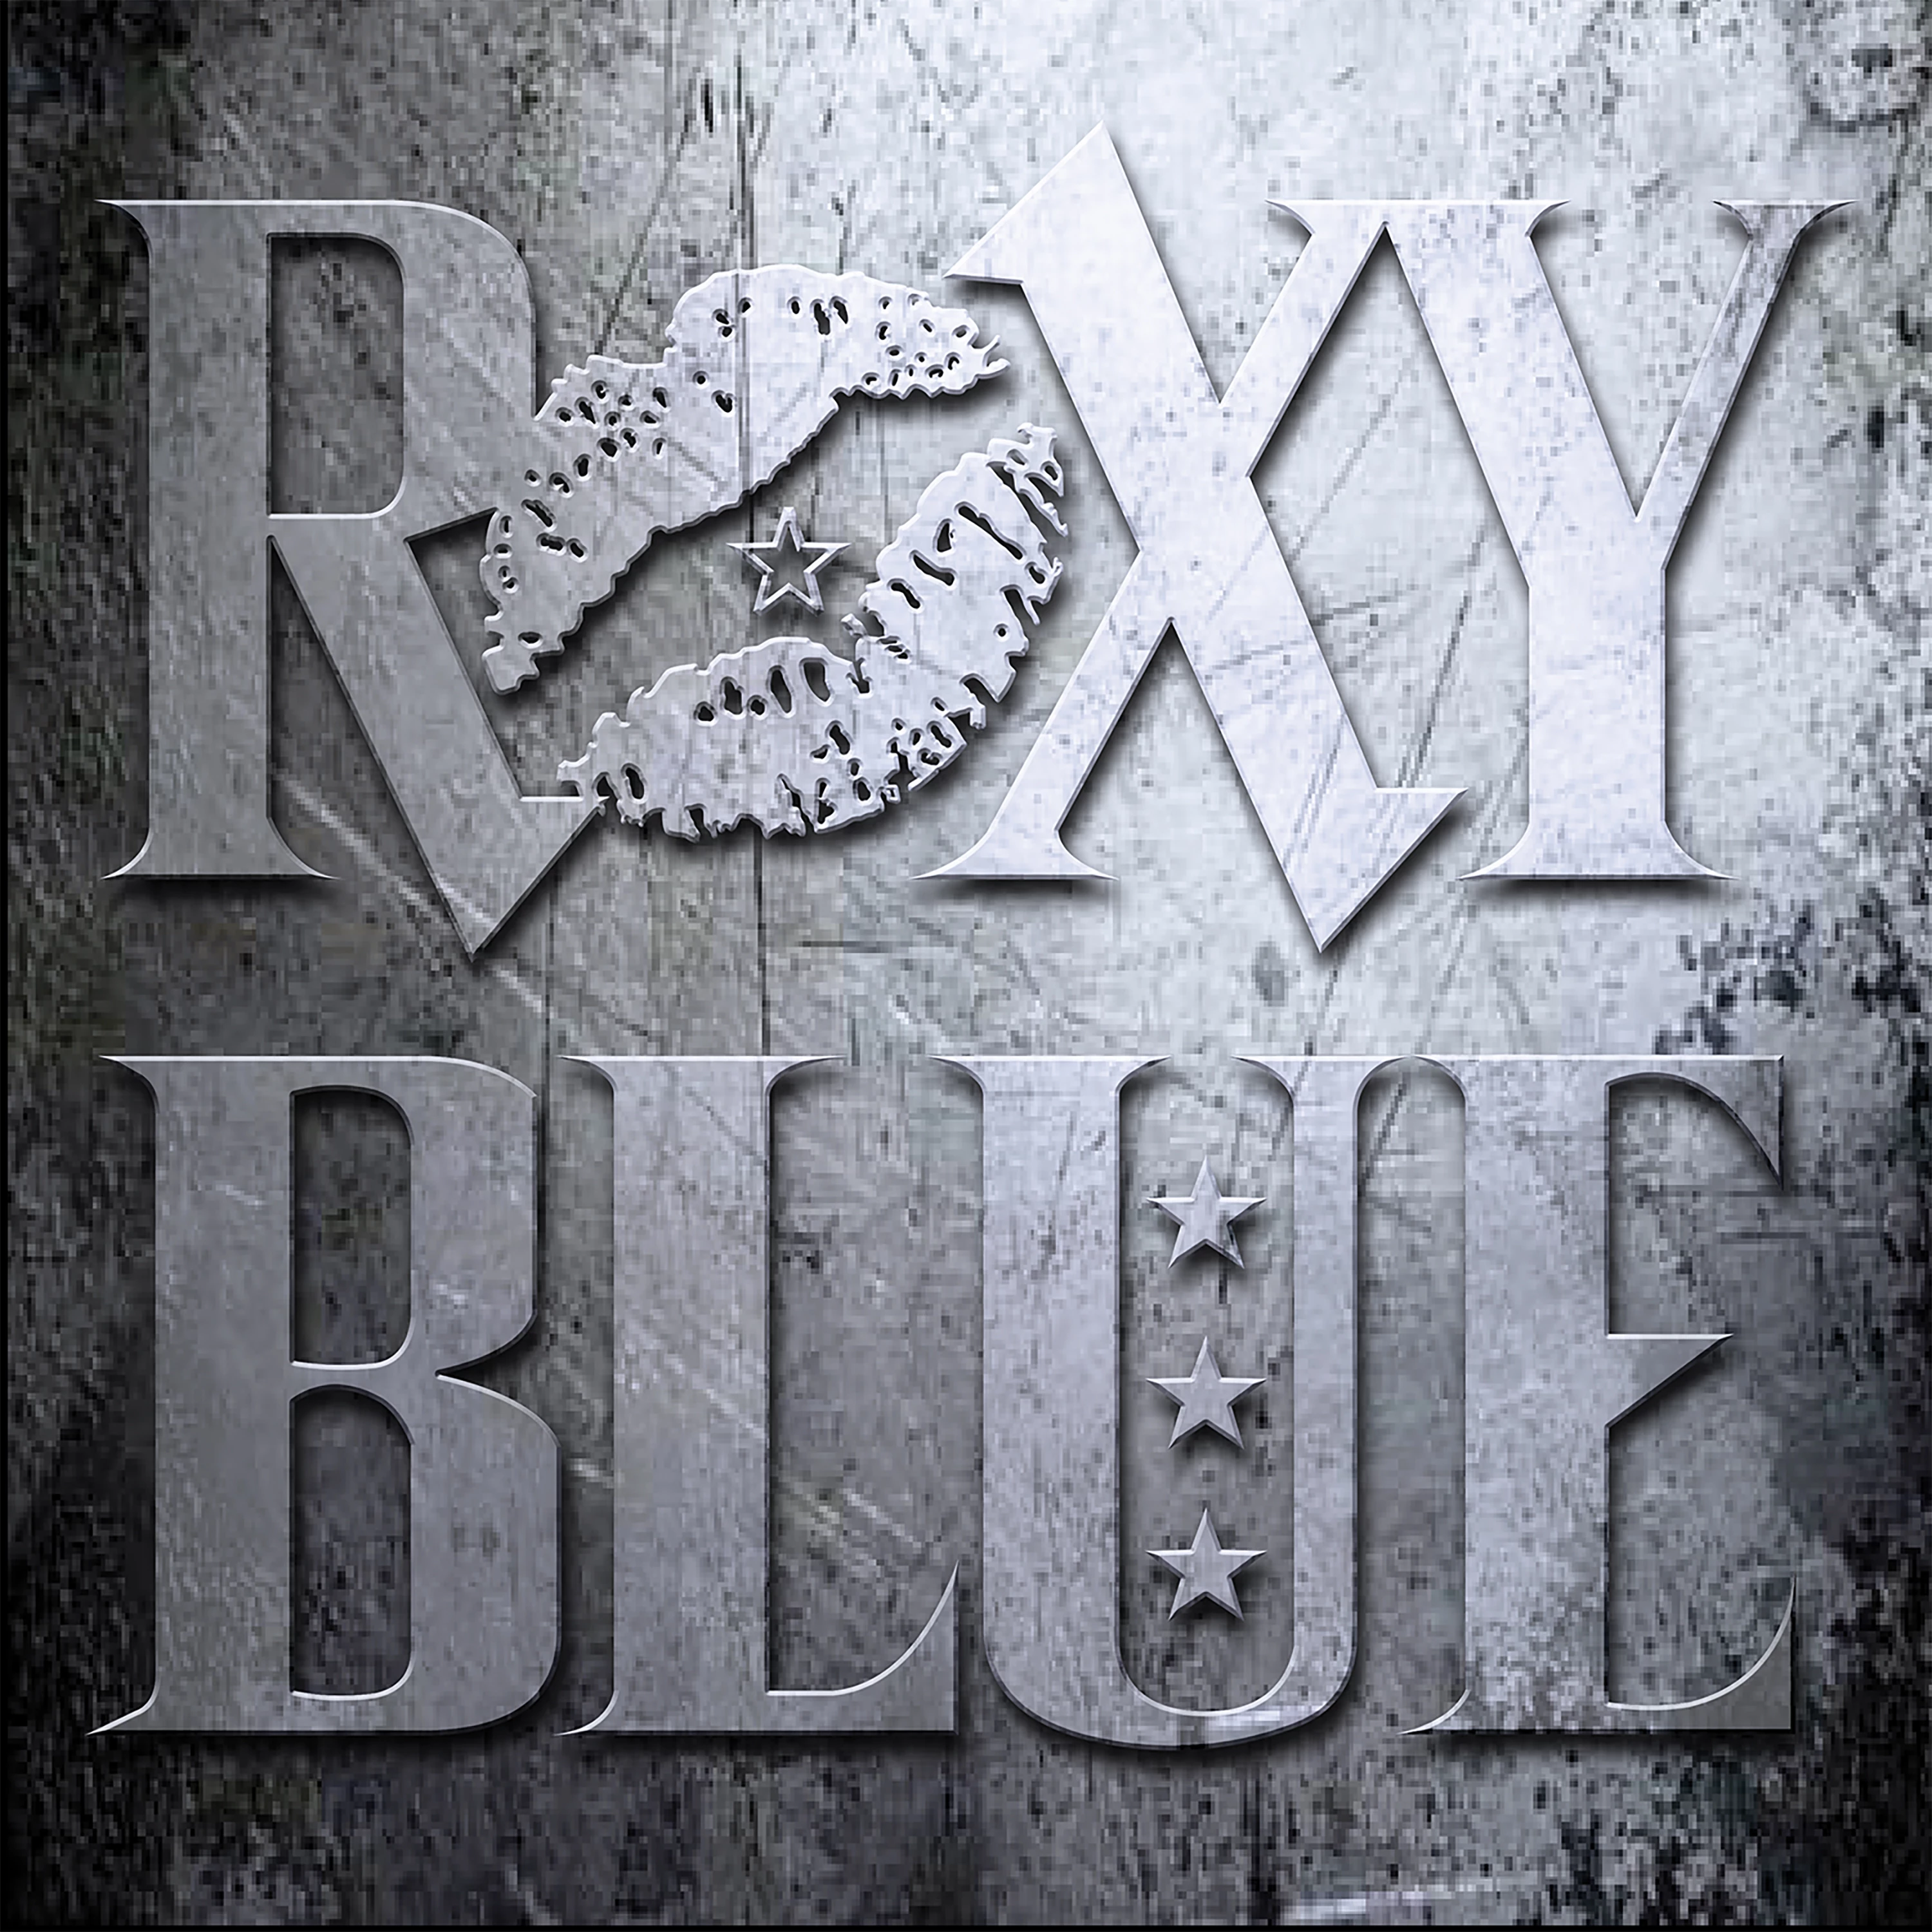 Roxy Blue - Roxy Blue